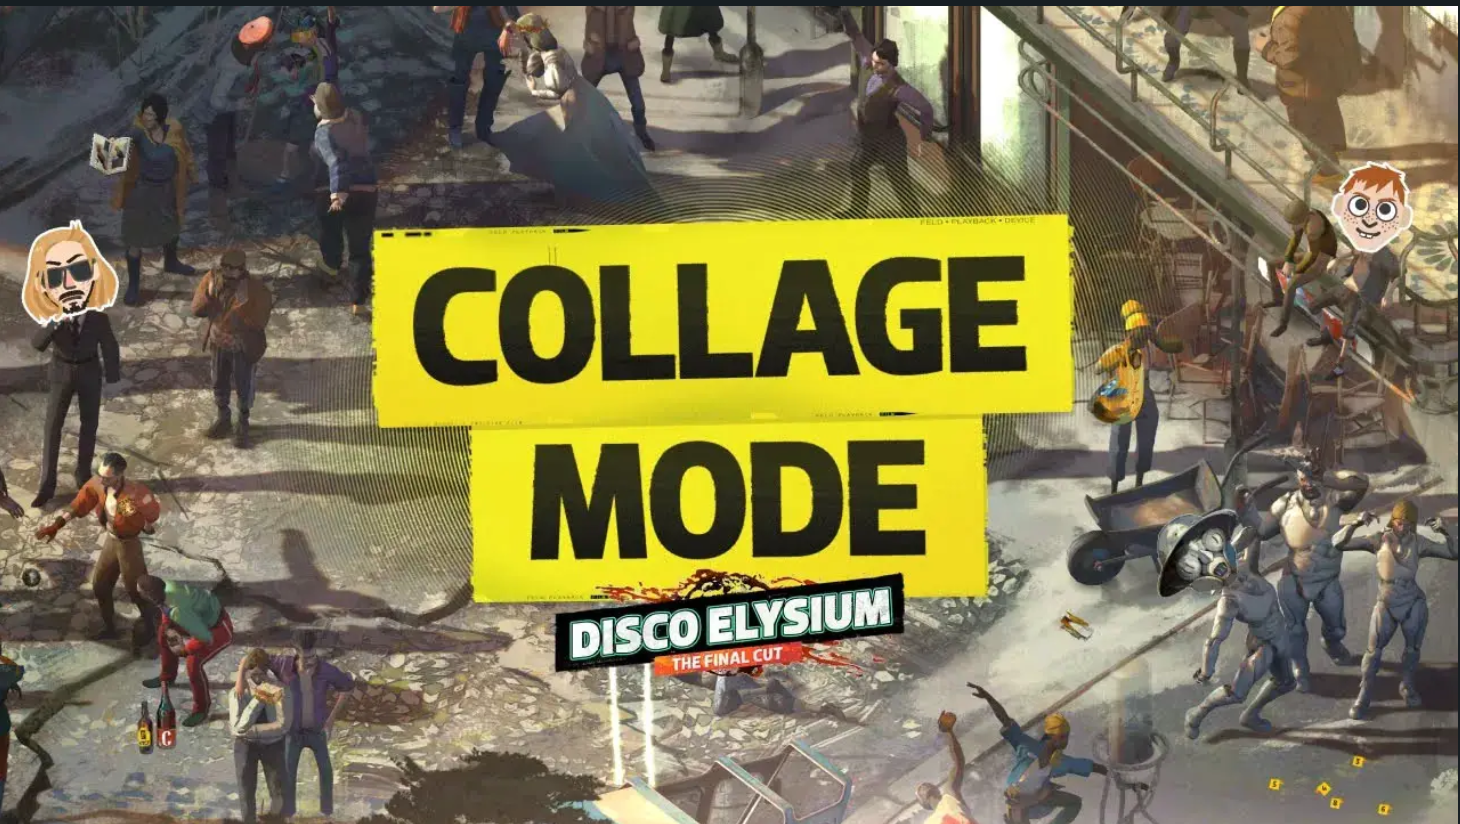 Le nouveau mode Collage de Disco Elysium vous permet de “créer les captures d’écran que vous avez toujours souhaitées”